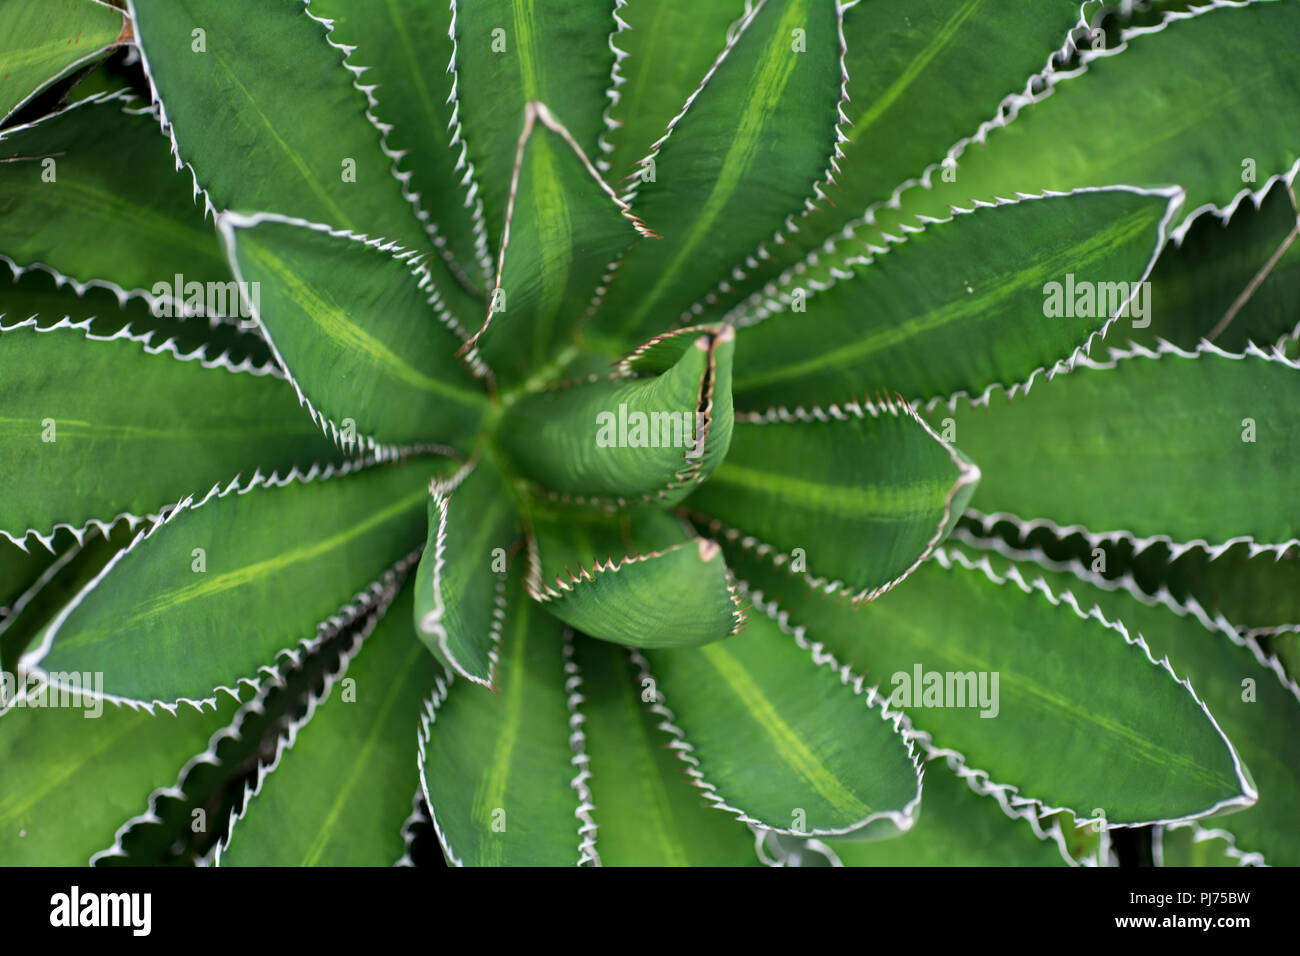 cactus plants Stock Photo